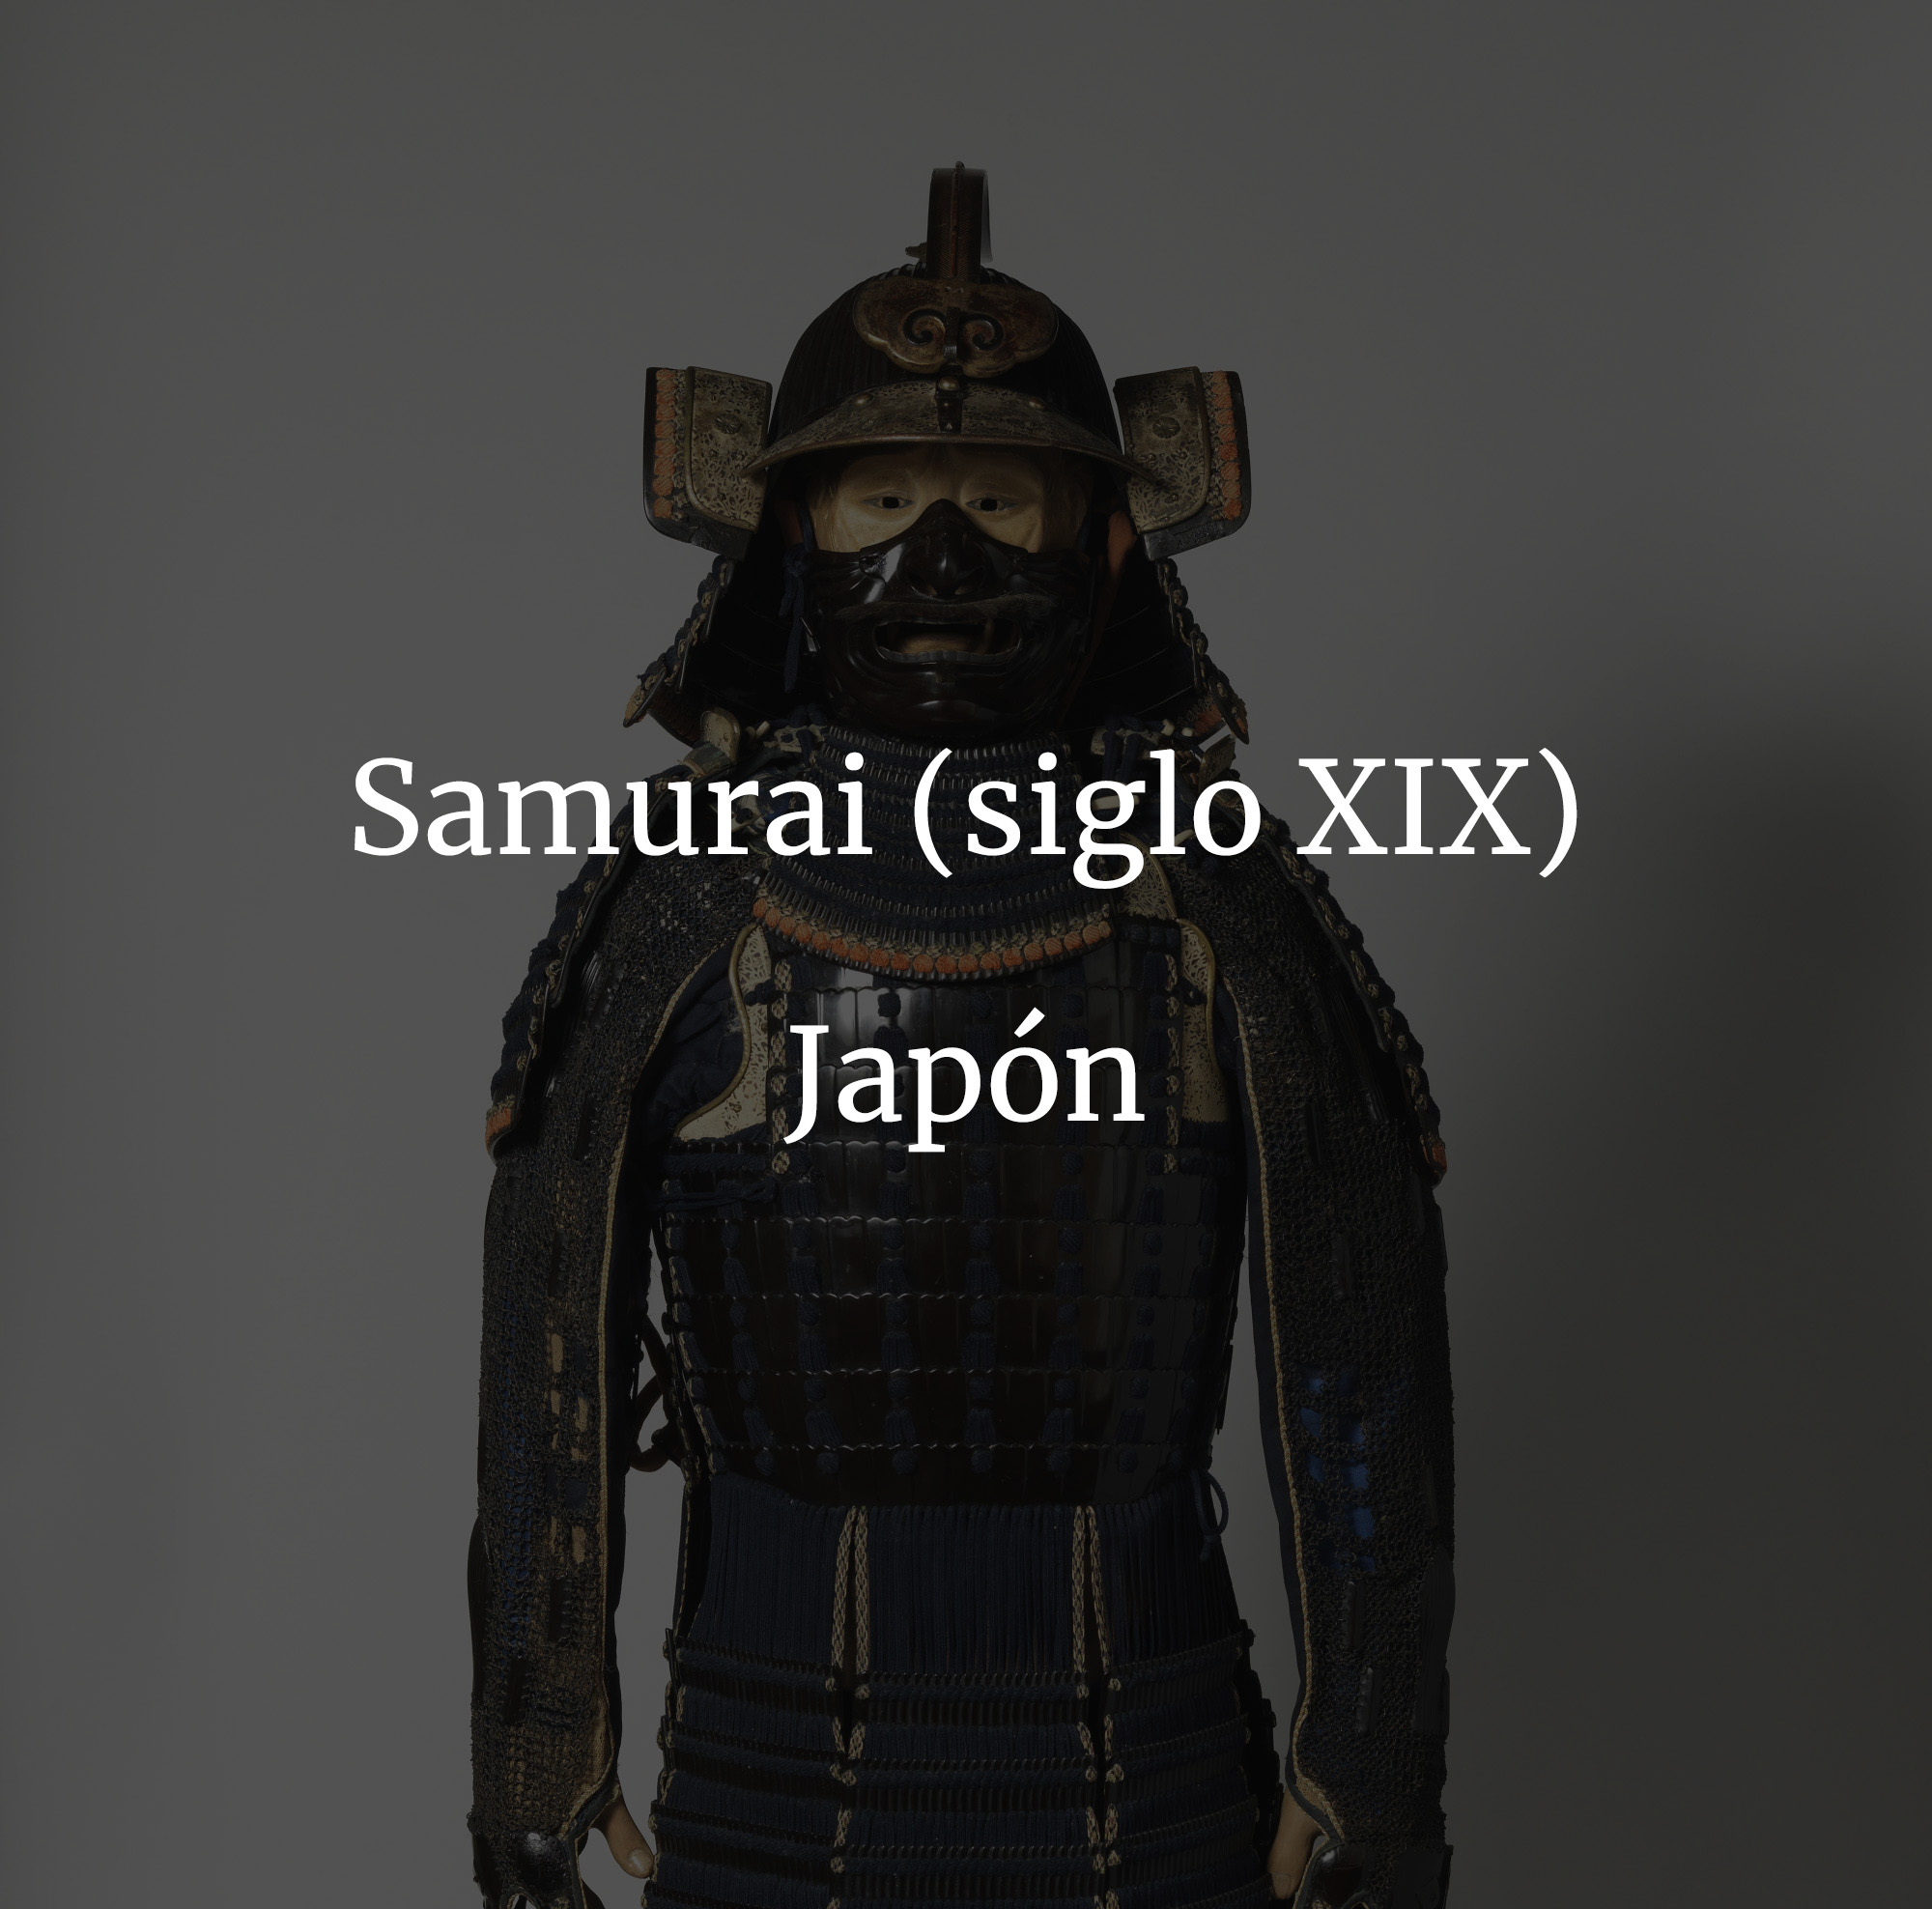 1-samurai-es